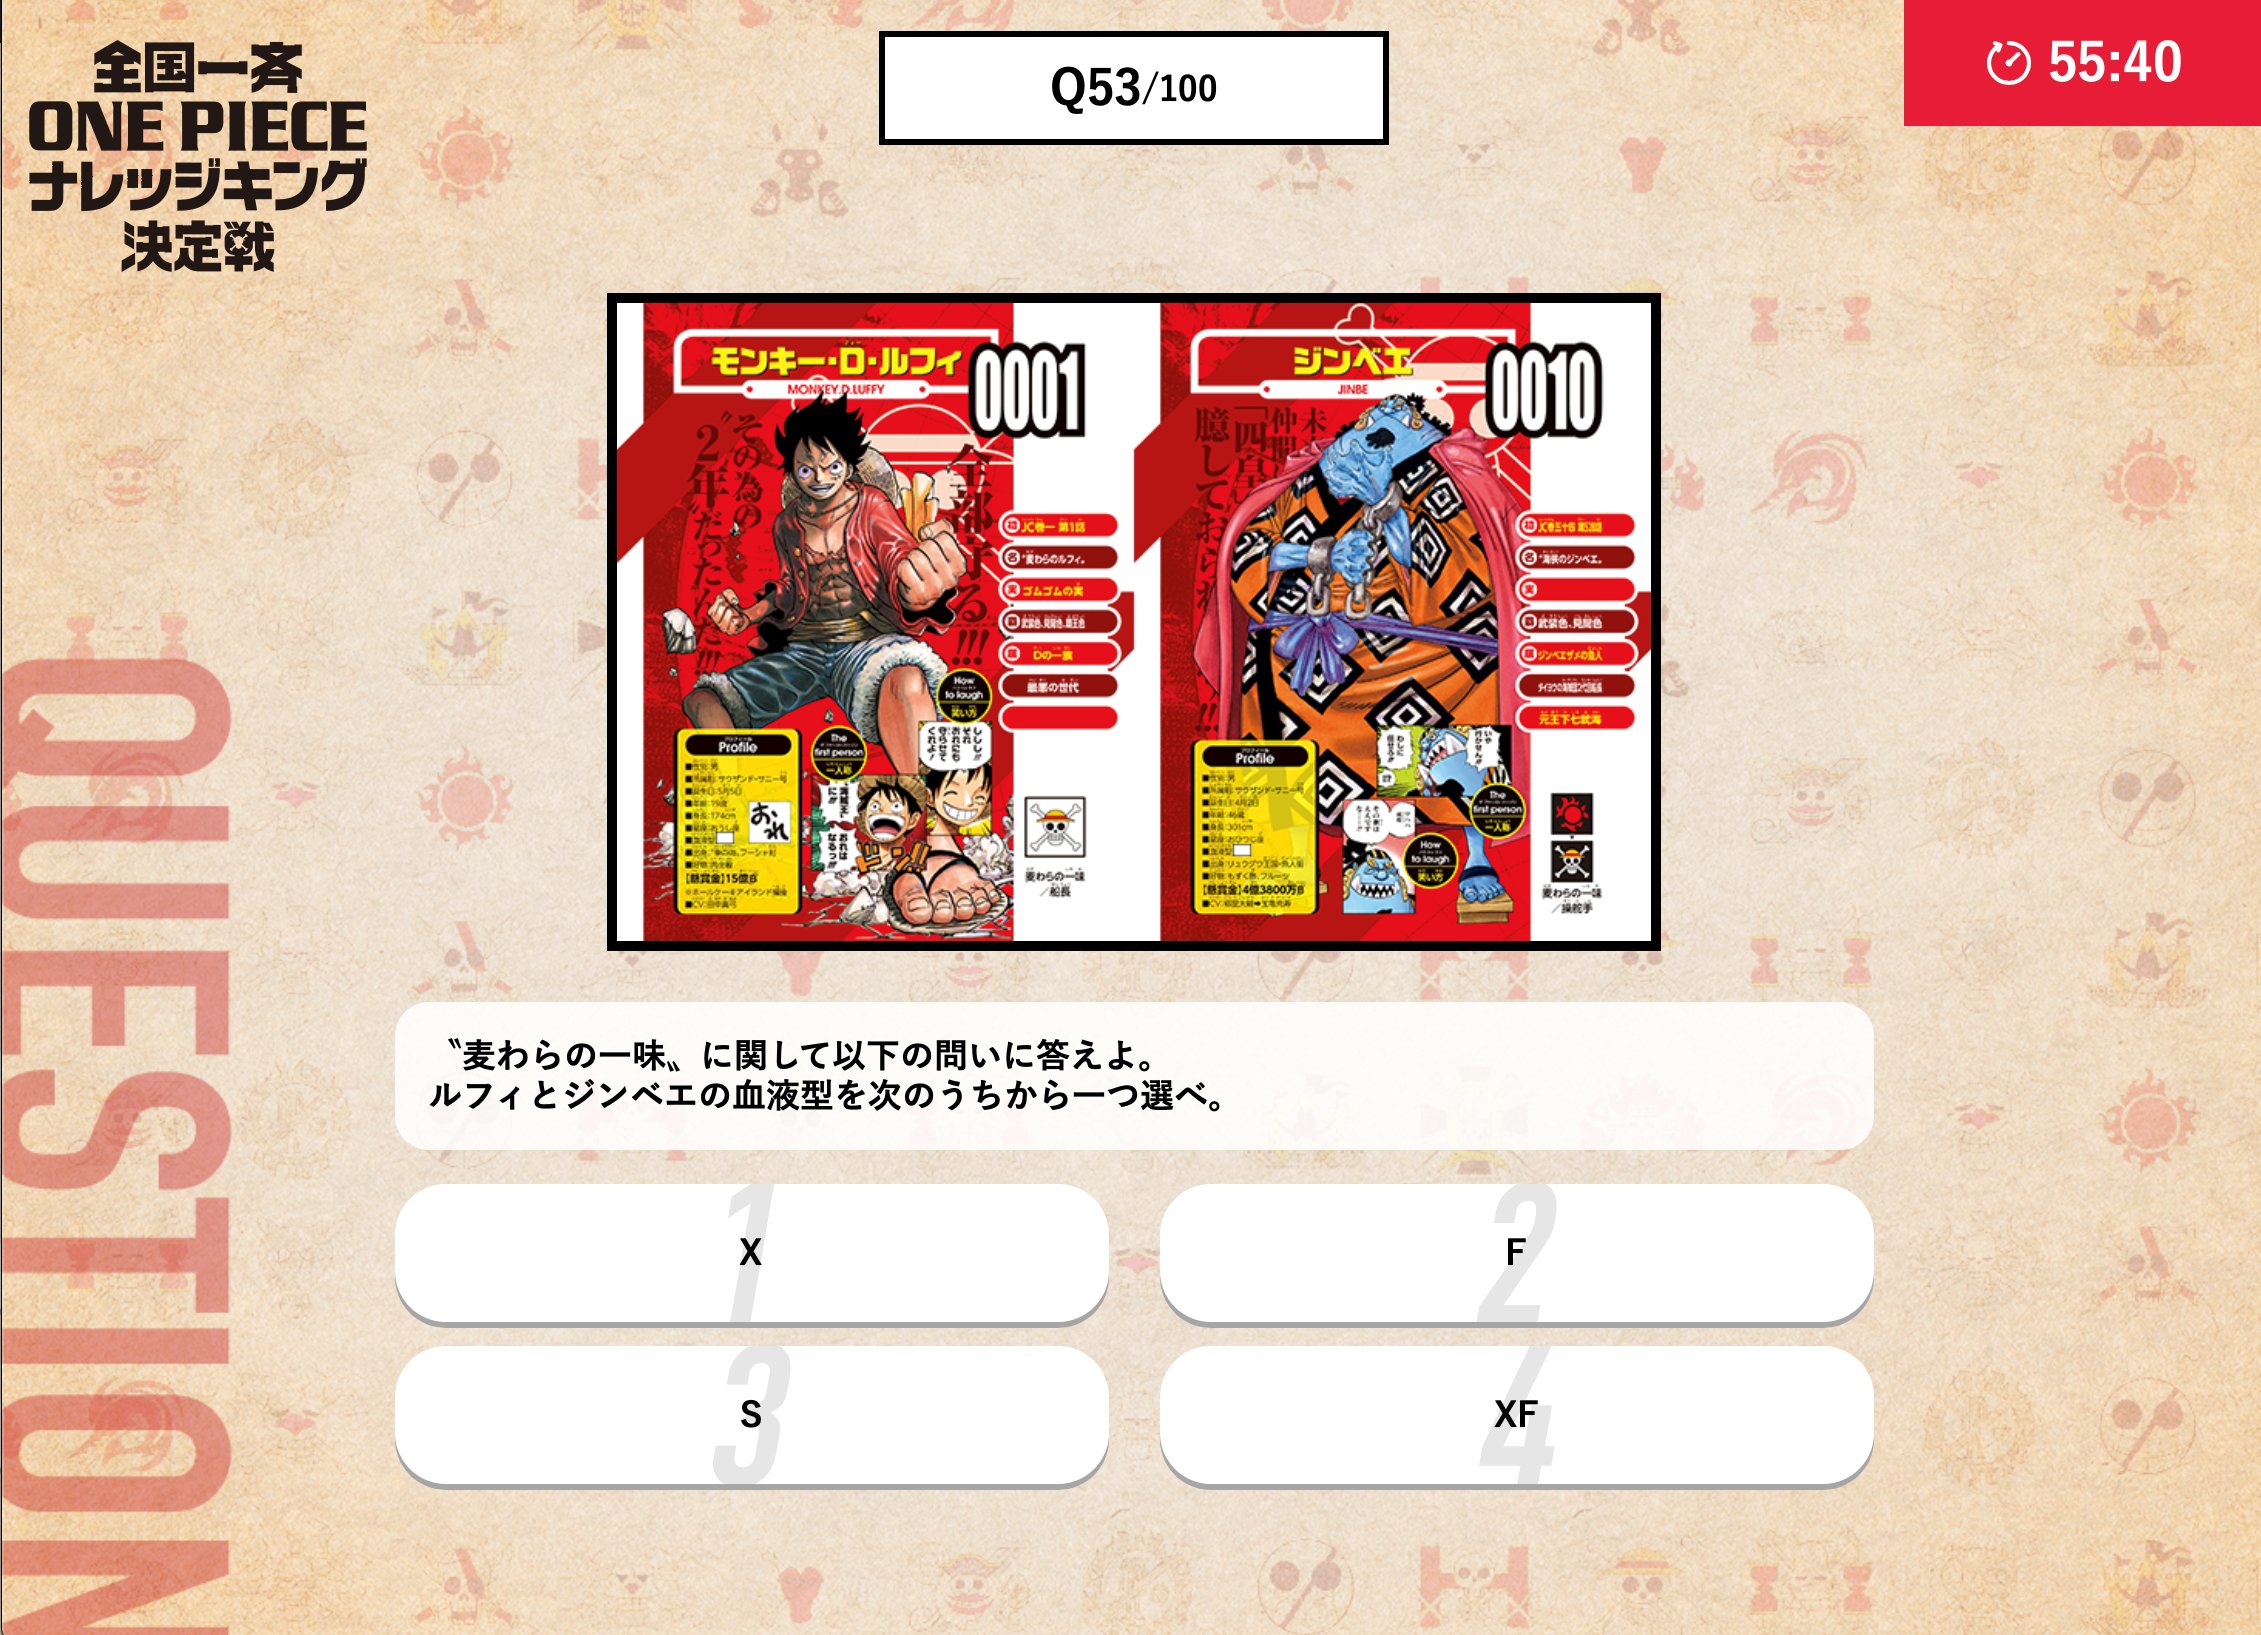 One Piece スタッフ 公式 Official 危険な状態であるルフィの為に 輸血に協力したジンベエ 二人の血液型を覚えてますか 試験範囲のビブルカード One Piece図鑑 には キャラクターの誕生日 年齢 身長 血液型など 色んな情報がまとめられているぞ